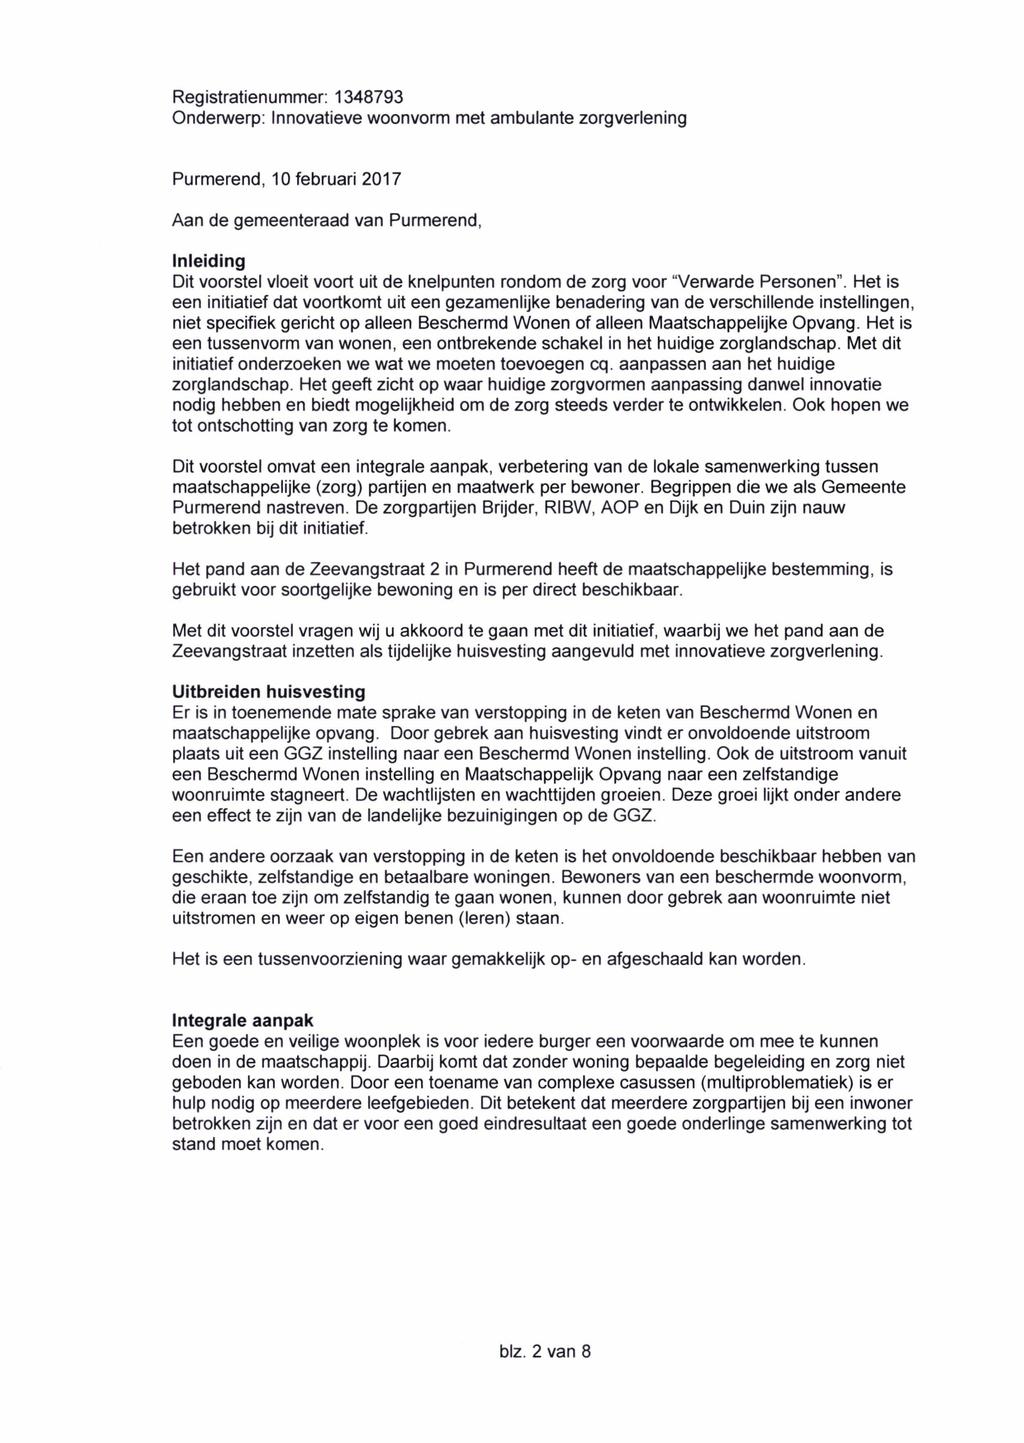 Purmerend, 10 februari 2017 Aan de gemeenteraad van Purmerend, Inleiding Dit voorstel vloeit voort uit de knelpunten rondom de zorg voor "Verwarde Personen".